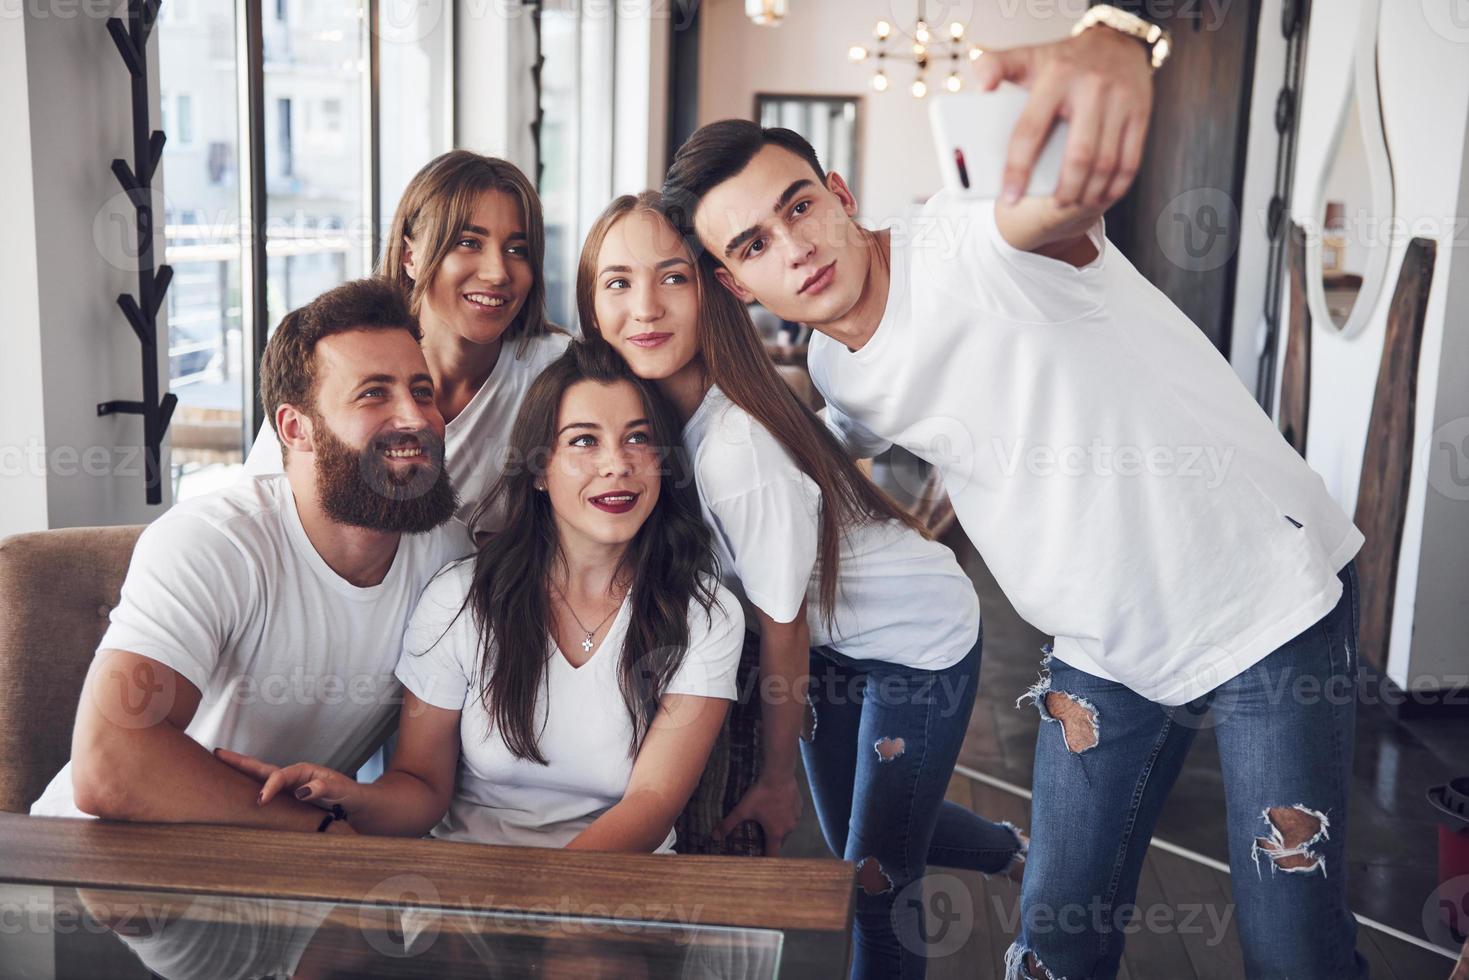 Eine Gruppe von Menschen macht in einem Café ein Selfie-Foto. die besten Freunde versammelten sich an einem Esstisch, aßen Pizza und sangen verschiedene Getränke foto